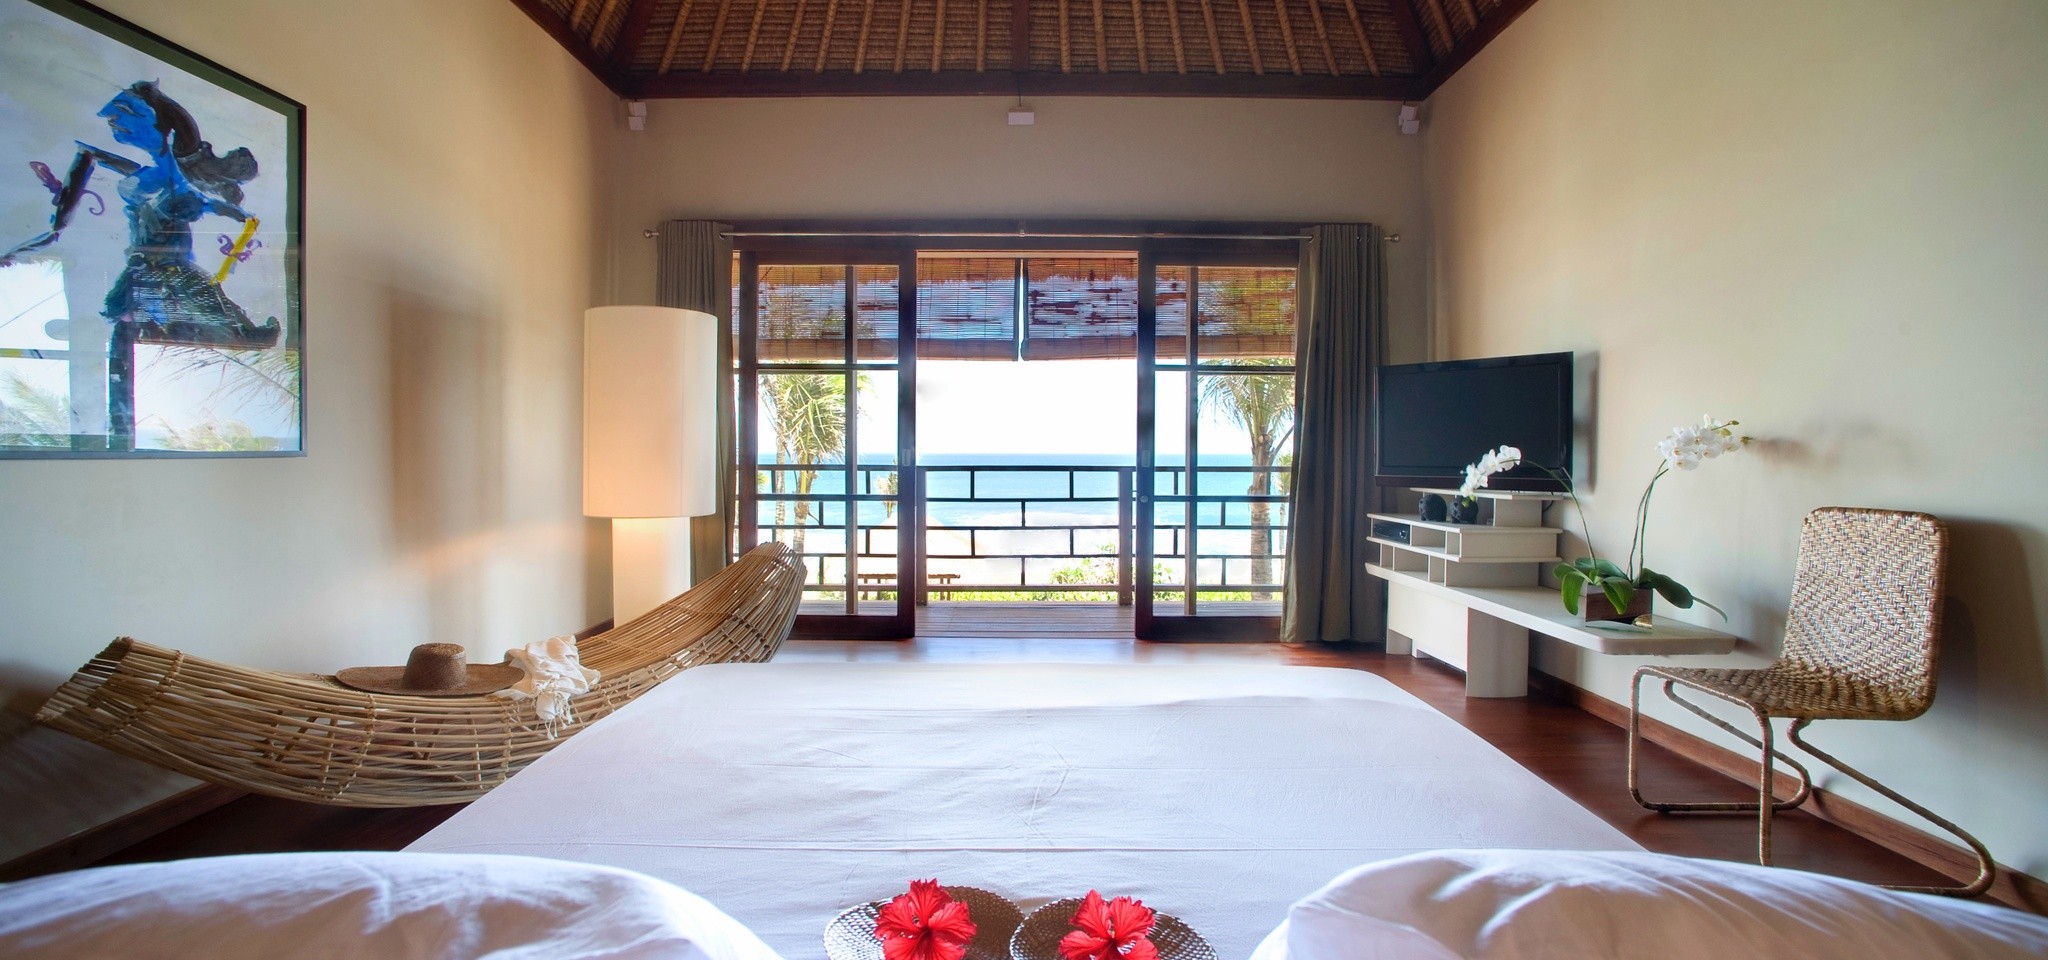 VillaMelissa Bedroom2 – Villa Melissa – Bali – Indonesia